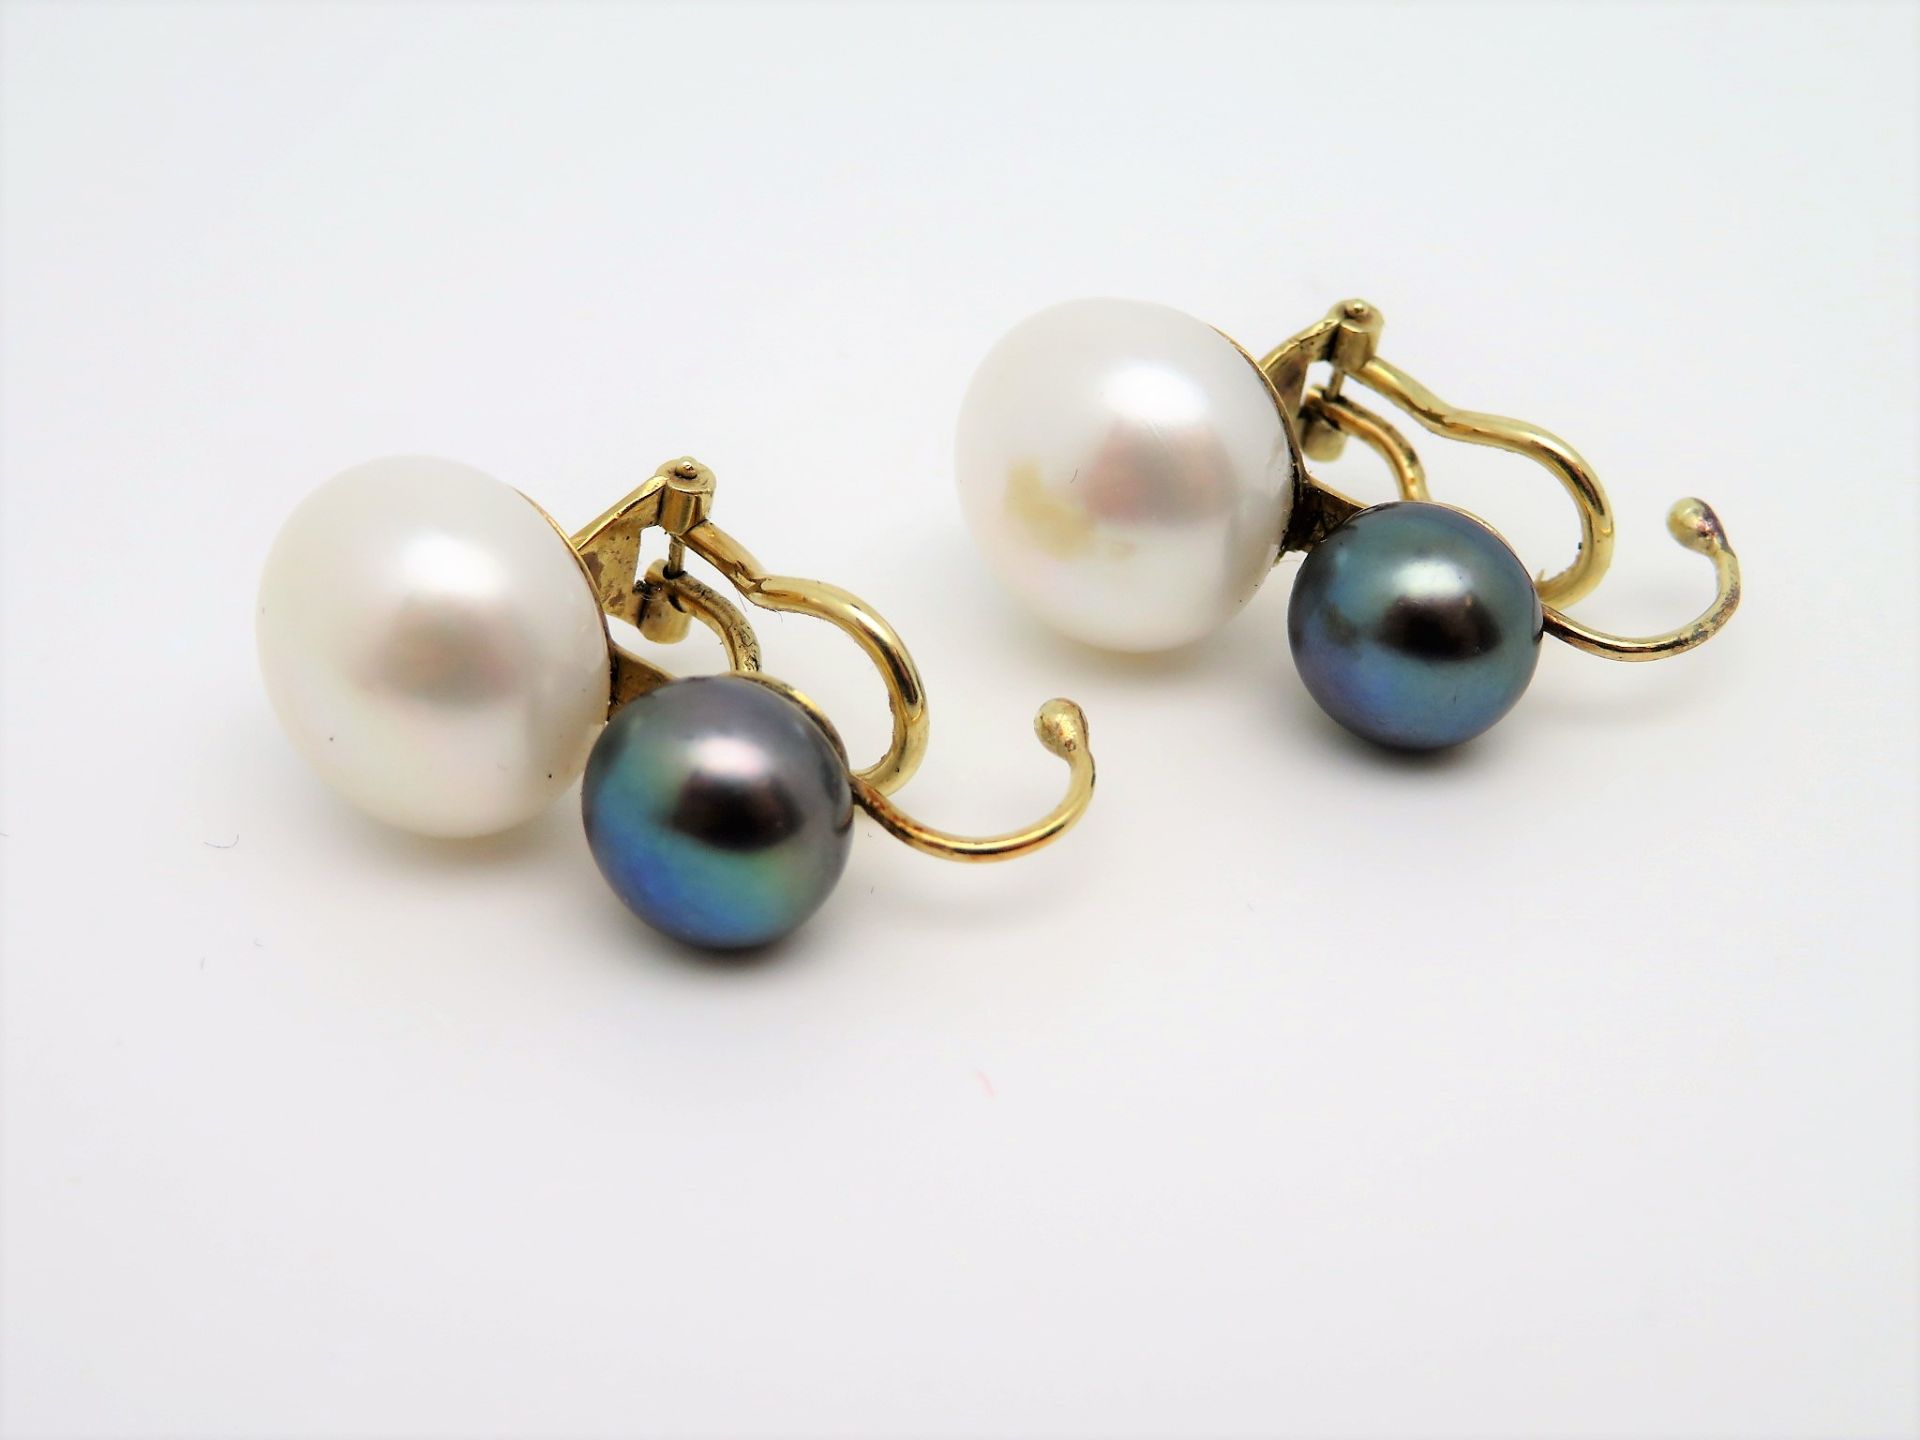 Paar Ohrclips, je 2 weiße und graue Perlen, 585er Gelbgold, gepunzt, brutto 10,3 g, Perle d 0,8/1,5